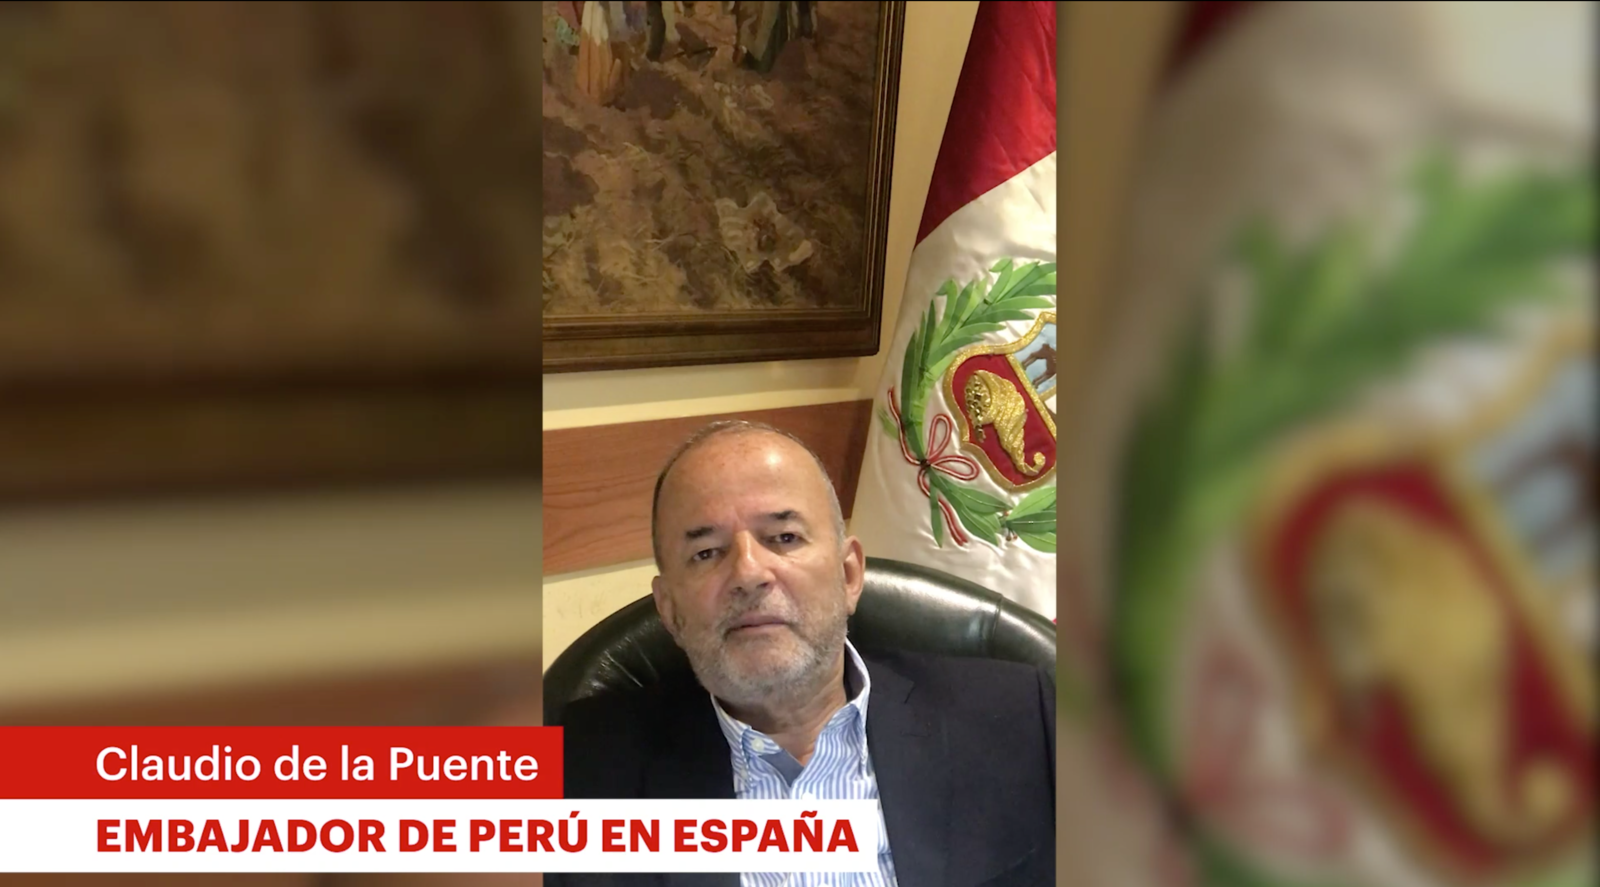 Videomensaje del Embajador de Perú en España